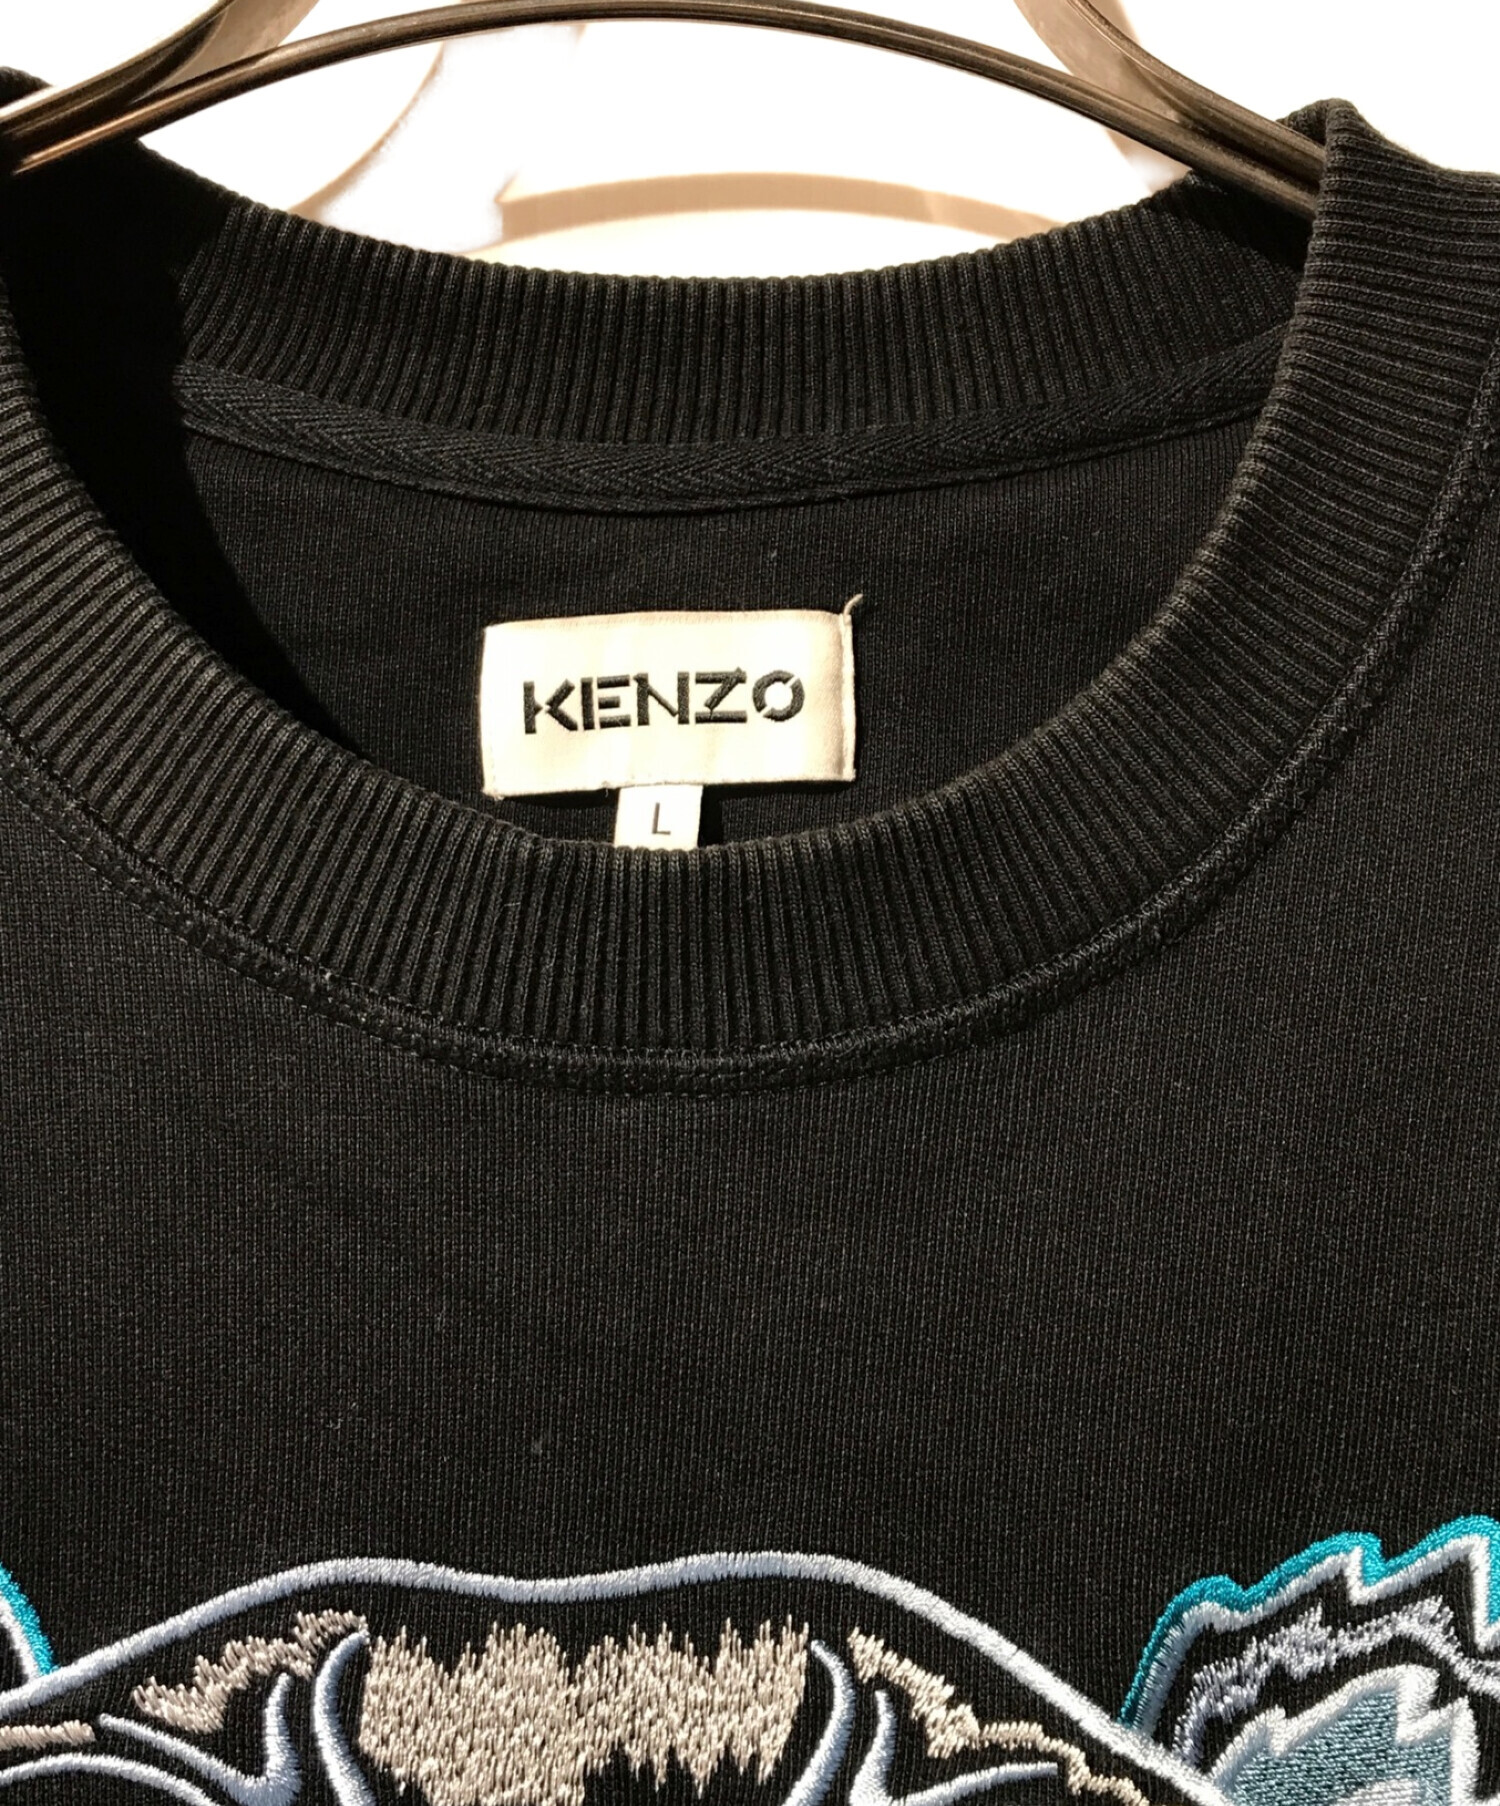 KENZO (ケンゾー) タイガー刺繍スウェット ブラック×ブルー サイズ:L